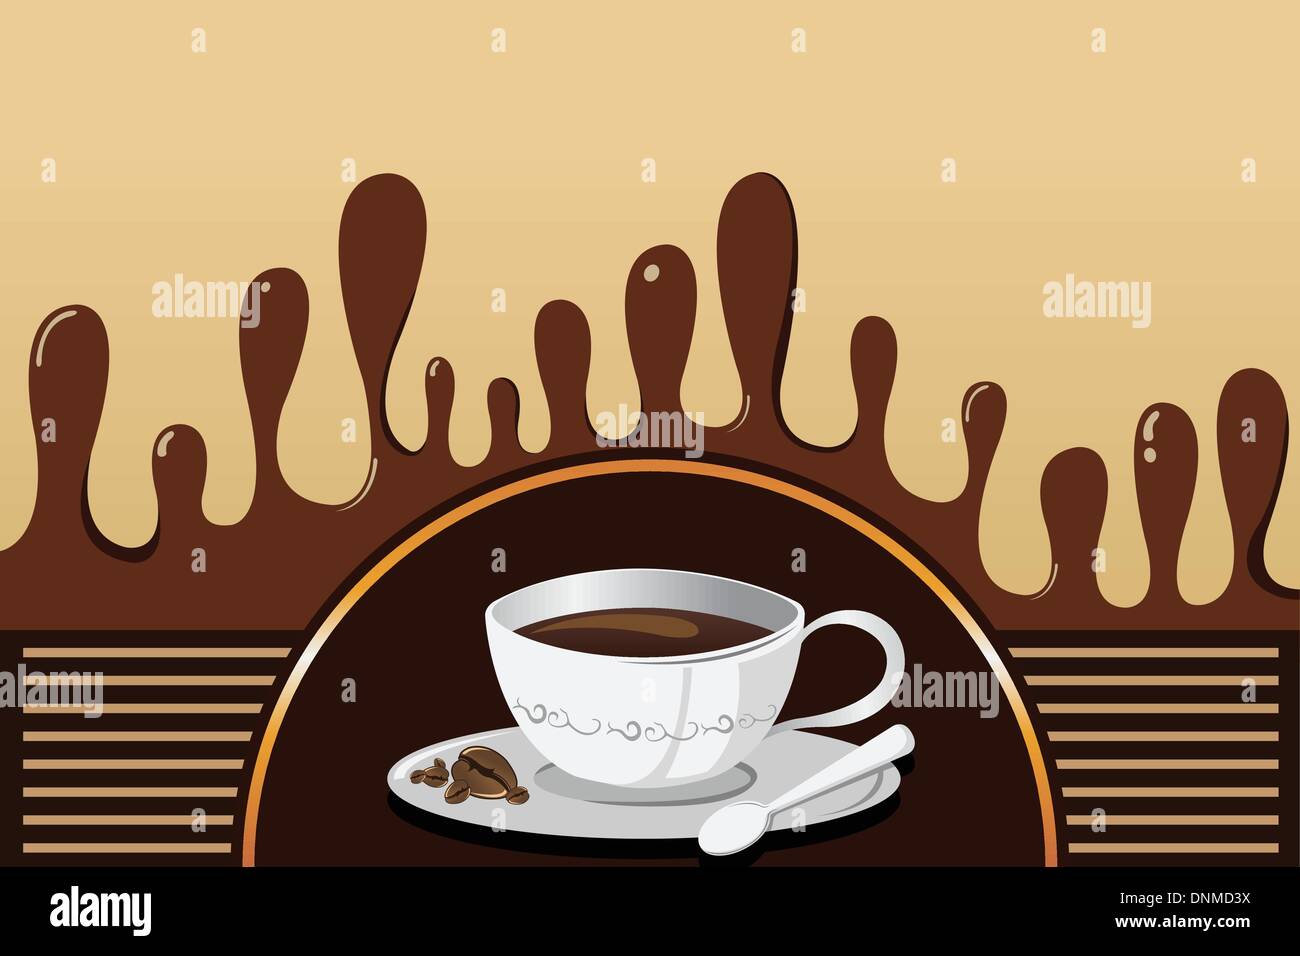 Eine Vektor-Illustration von Kaffee Becher Hintergrund mit Exemplar Stock Vektor